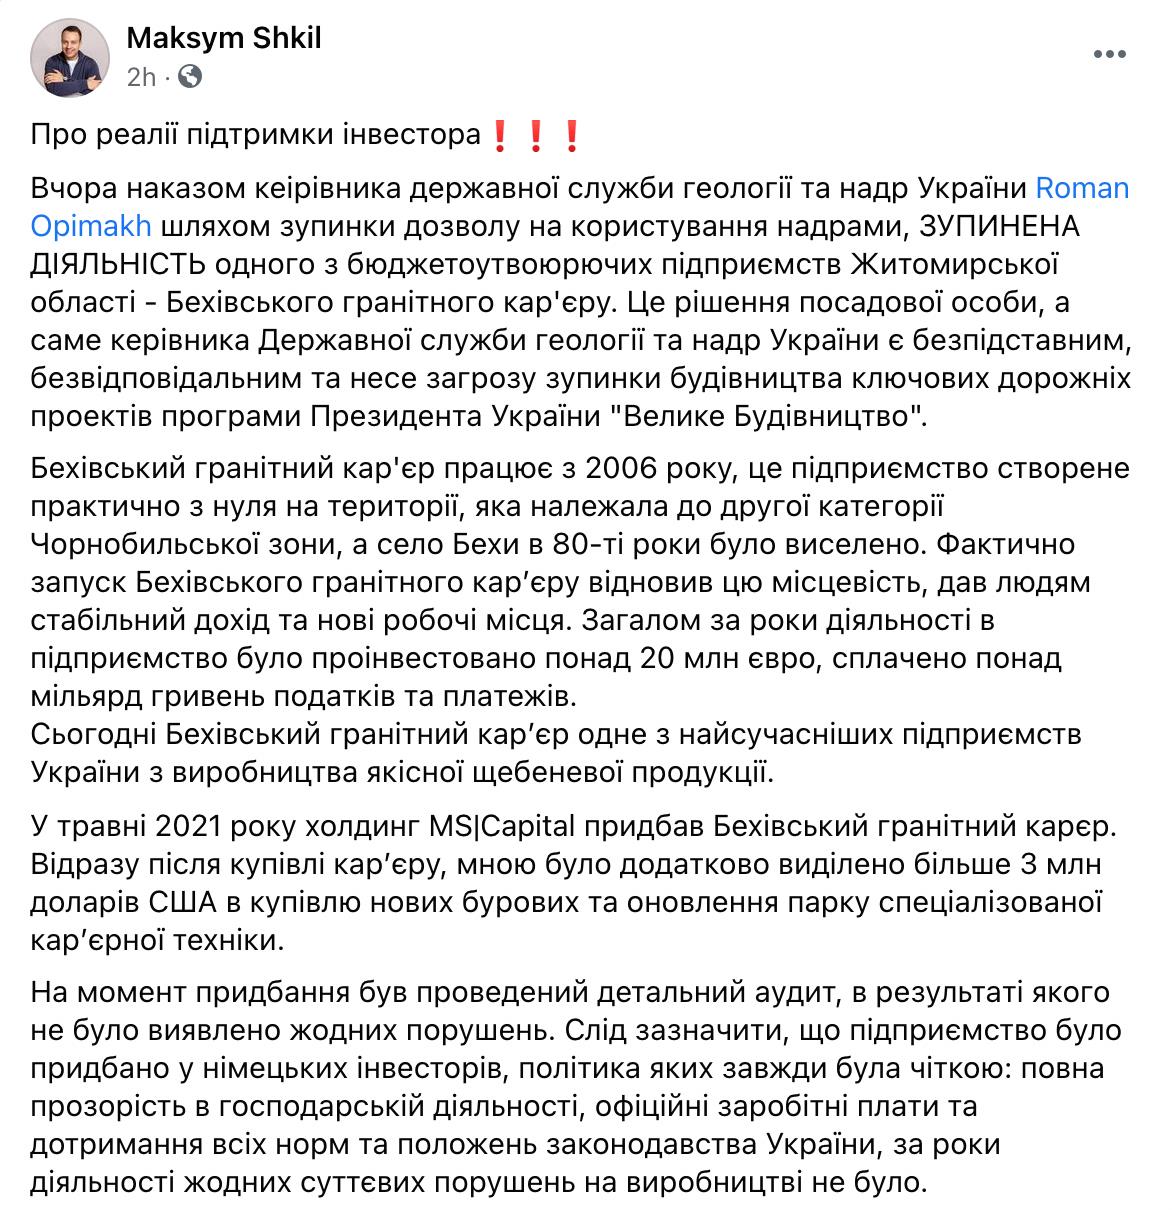 «Вредительское решение»: Саакашвили раскритиковал главу Госгеонедр за остановку карьера в Житомирской области - фото 4